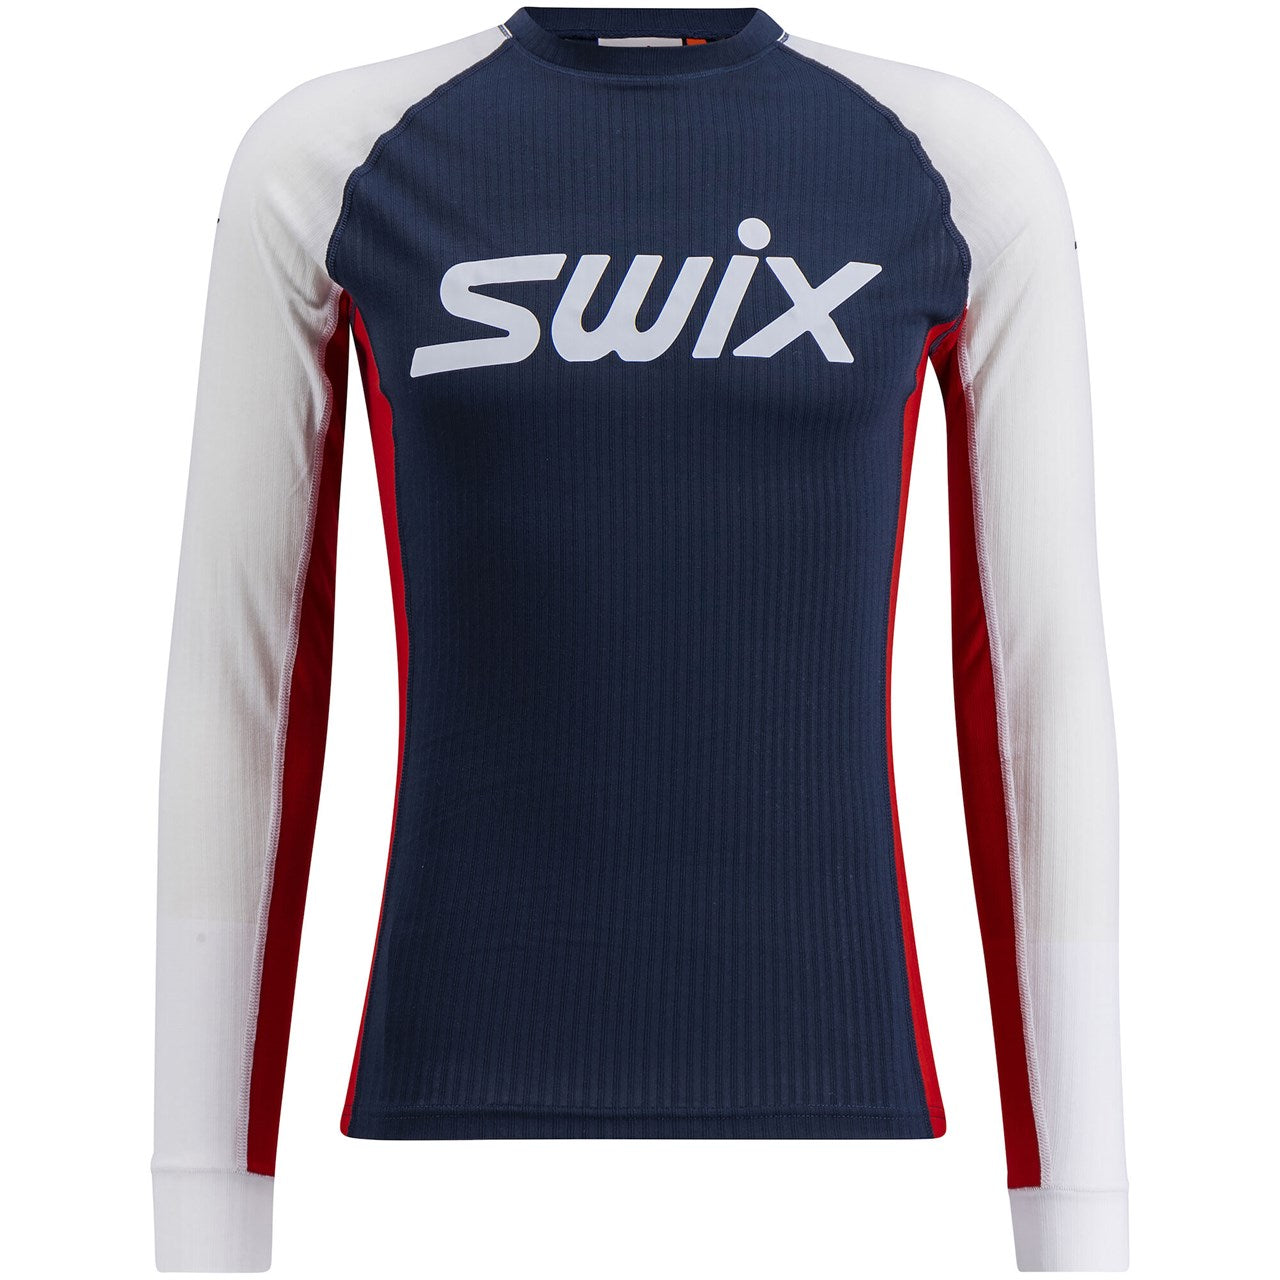 Swix Men's RaceX Classic Long Sleeve